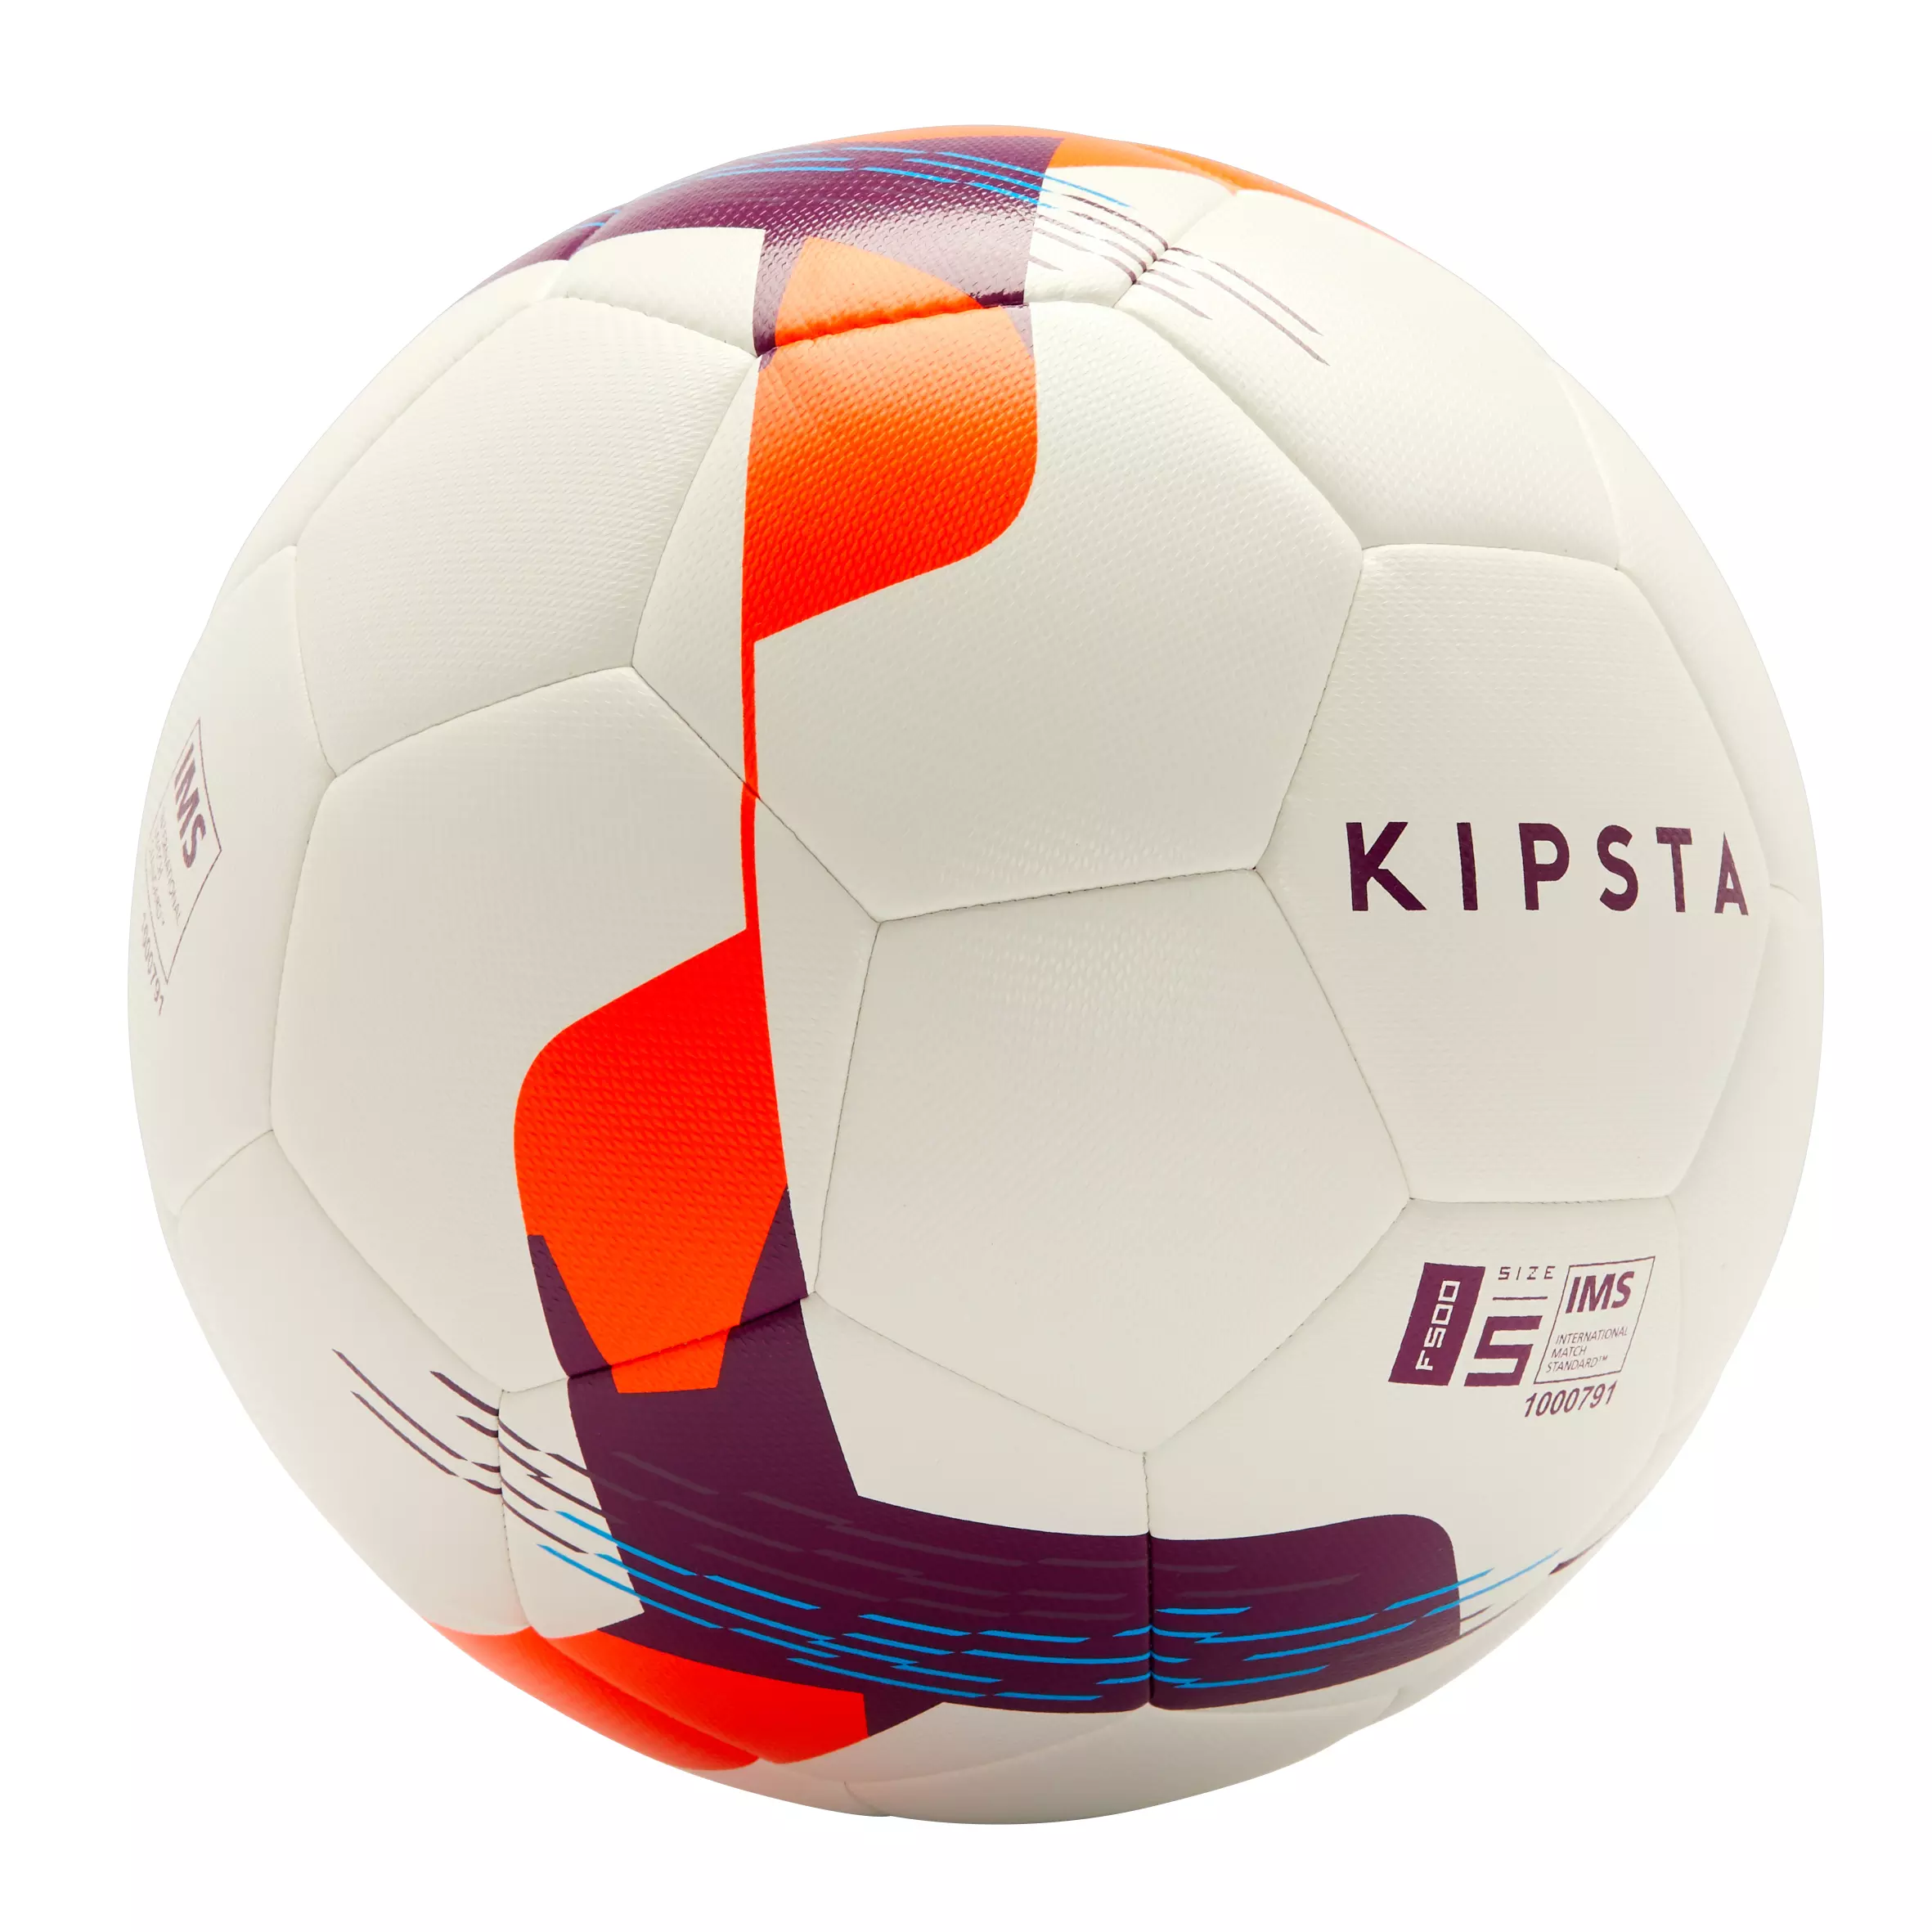 Decathlon Football / Soccer Ball (Lasting Air Retention) - Kipsta